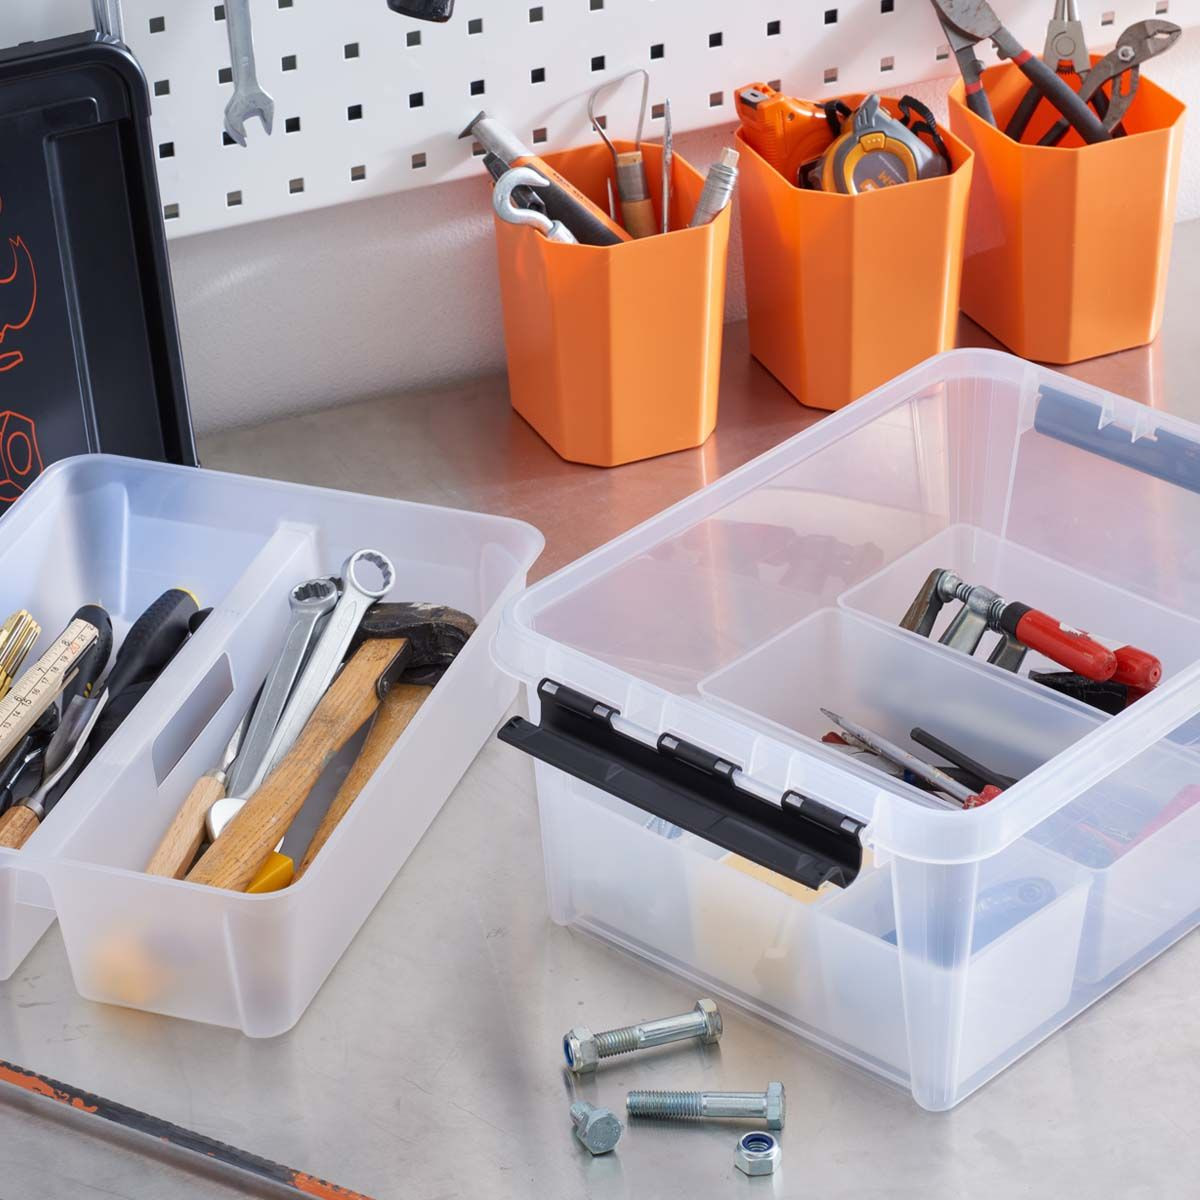 Quelle caisse à outils choisir pour bricoler à la maison ? - Le